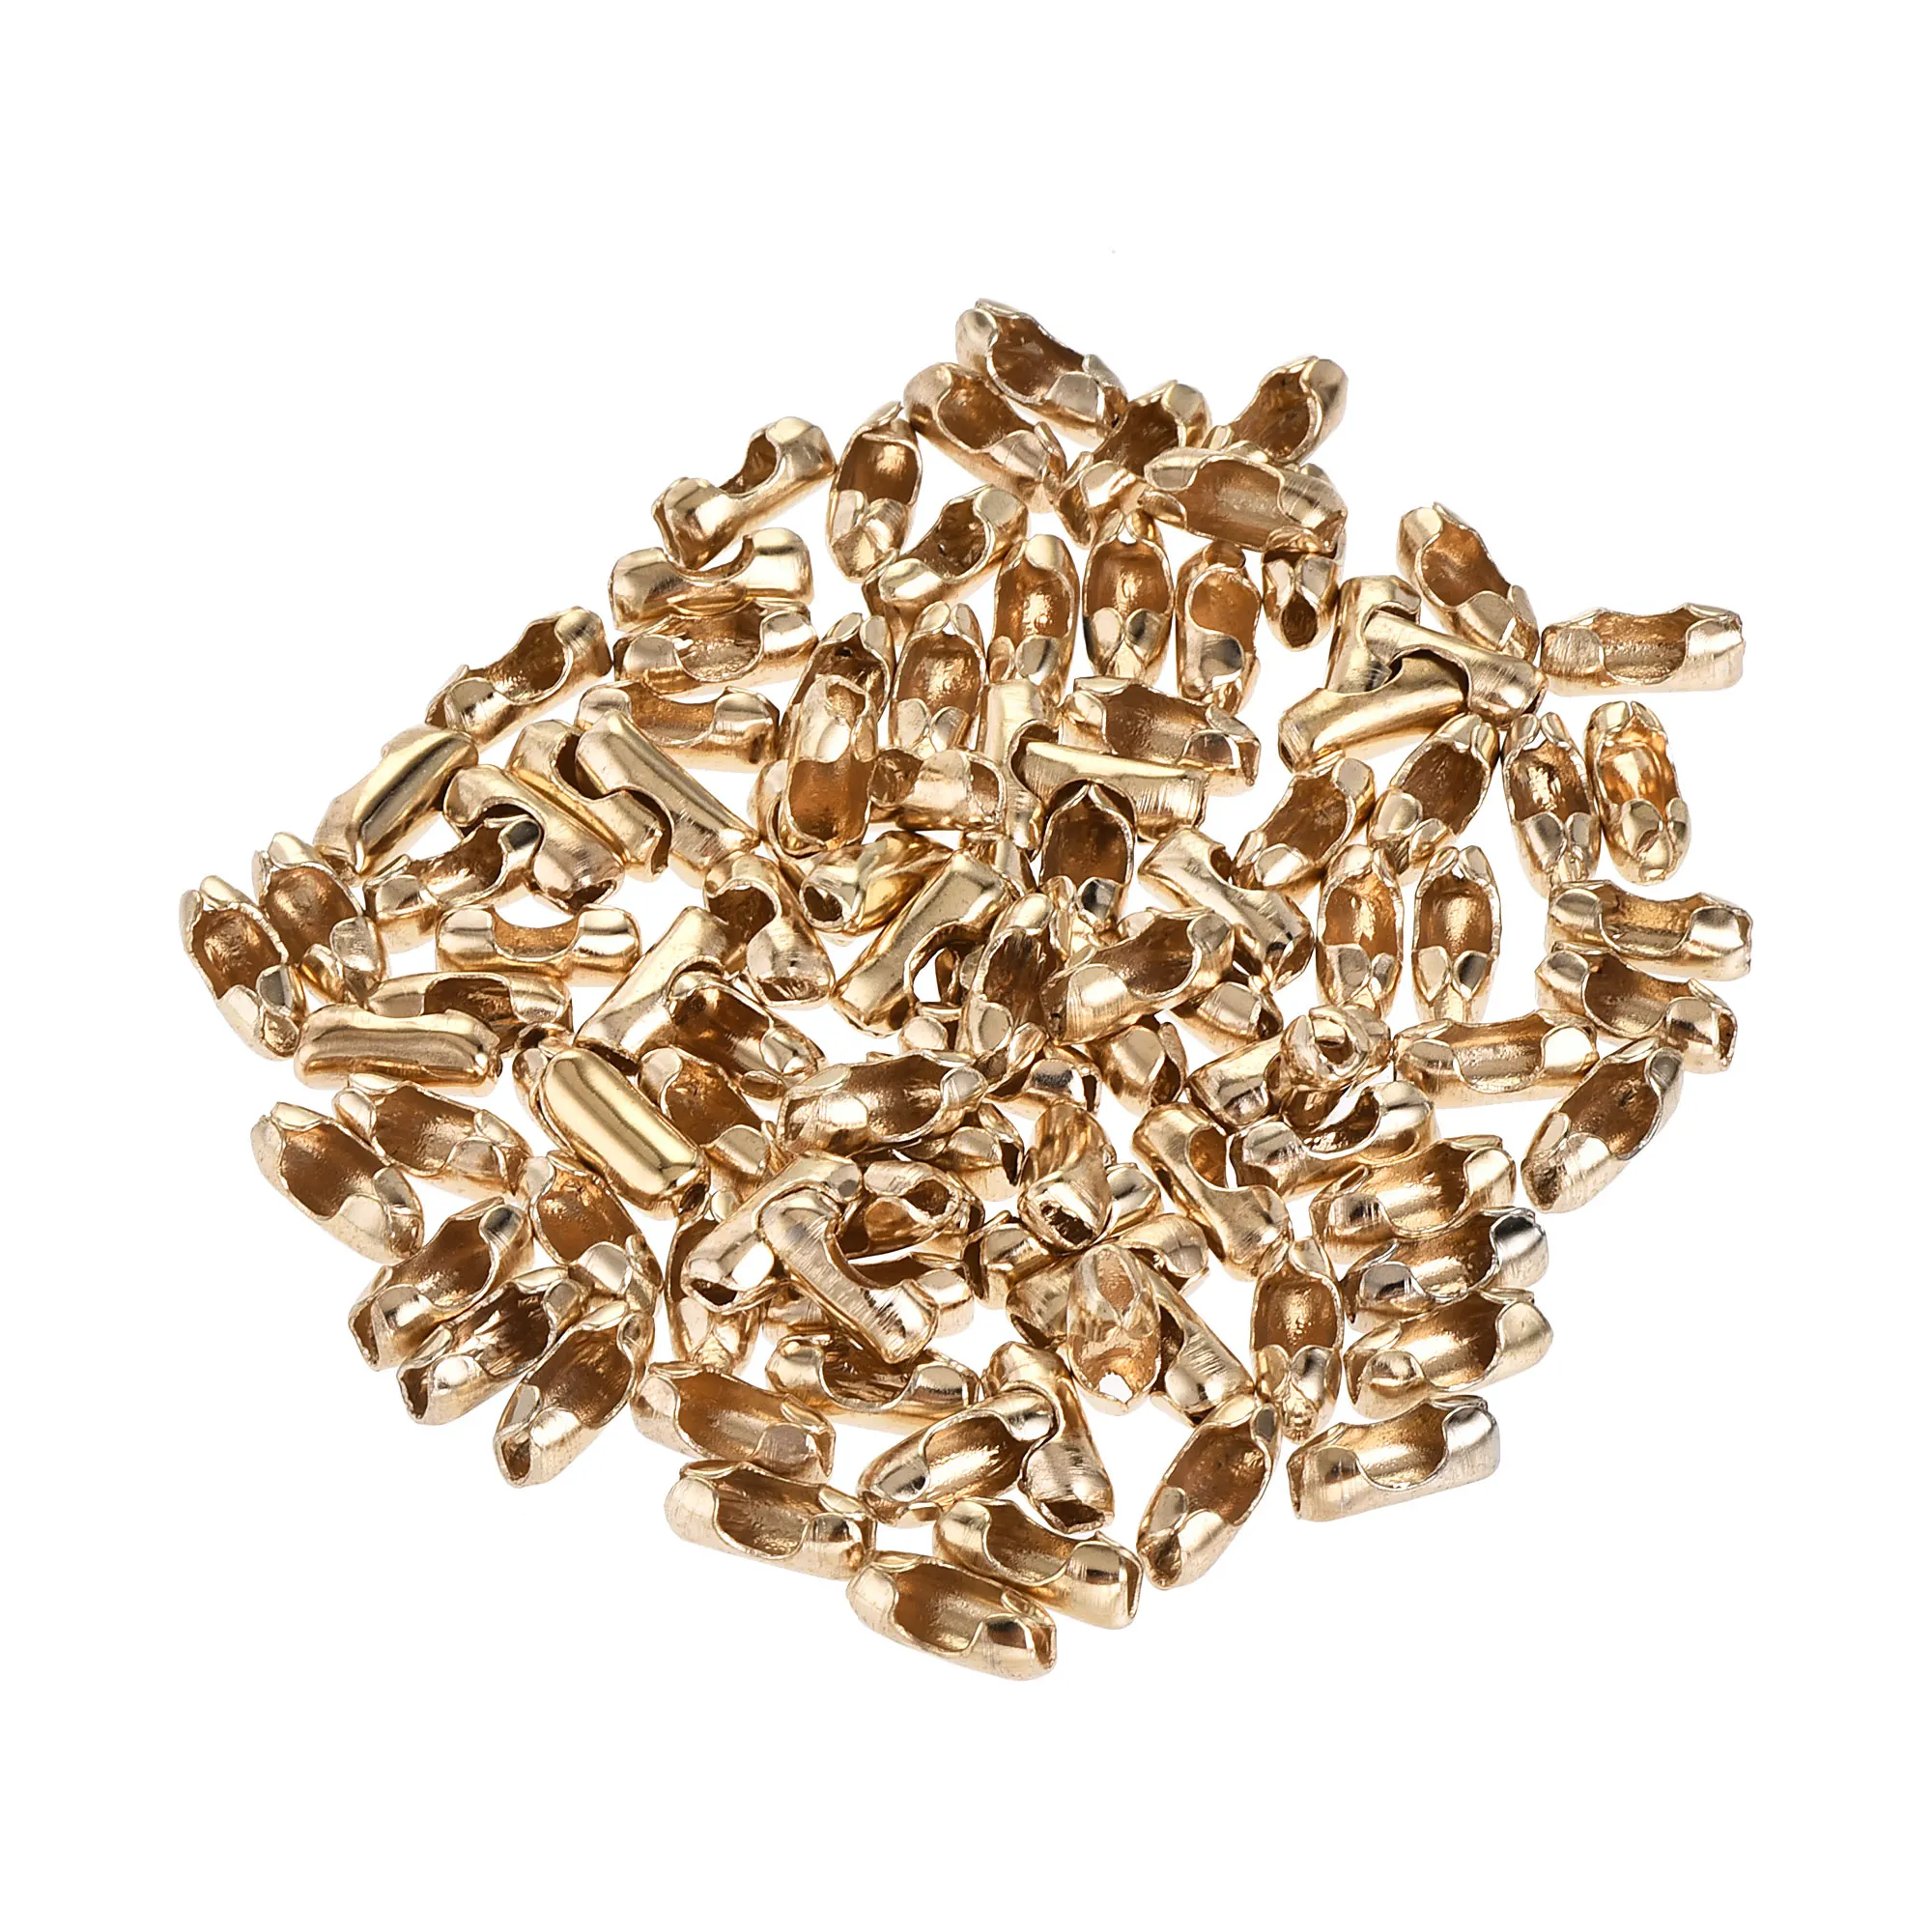 

Соединитель цепи Uxcell с шариками, 3,2 мм, обжимные звенья, железное гальваническое покрытие, золотой цвет шампанского, 100 шт.